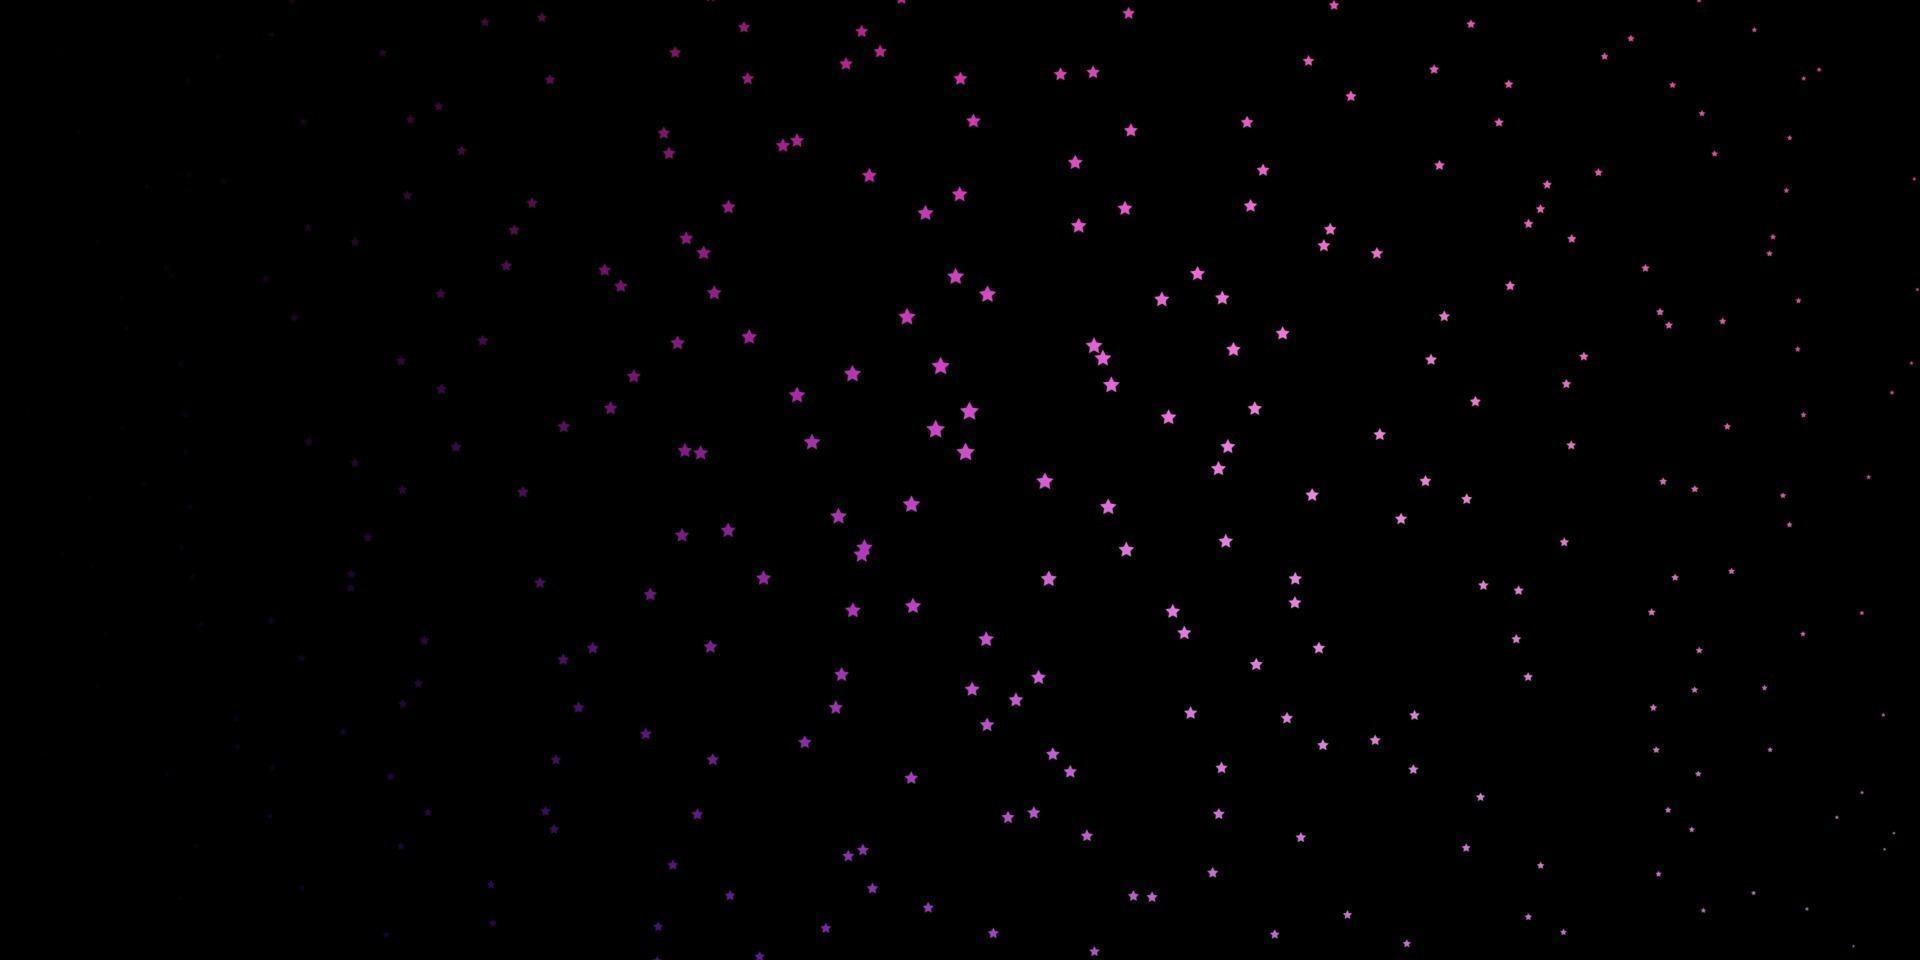 donkerpaars, roze vectorachtergrond met kleurrijke sterren. vector